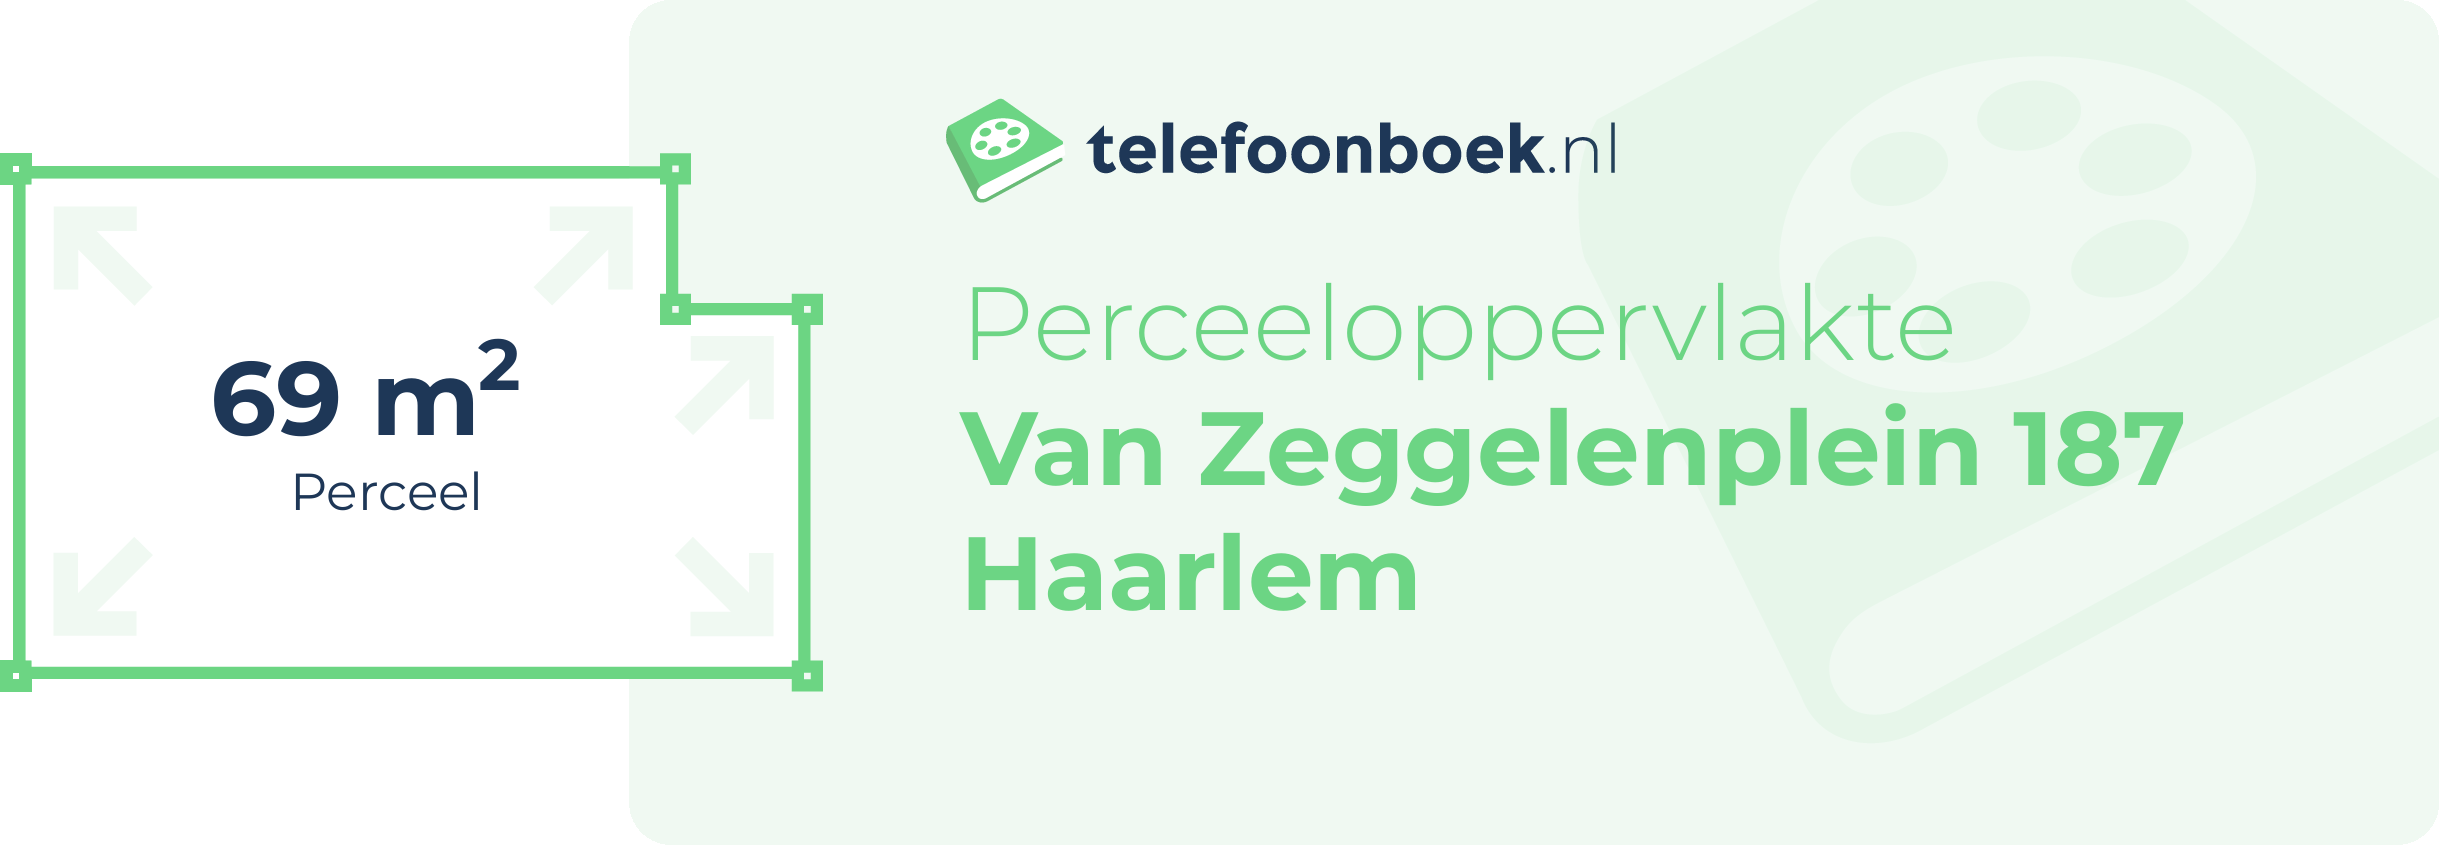 Perceeloppervlakte Van Zeggelenplein 187 Haarlem